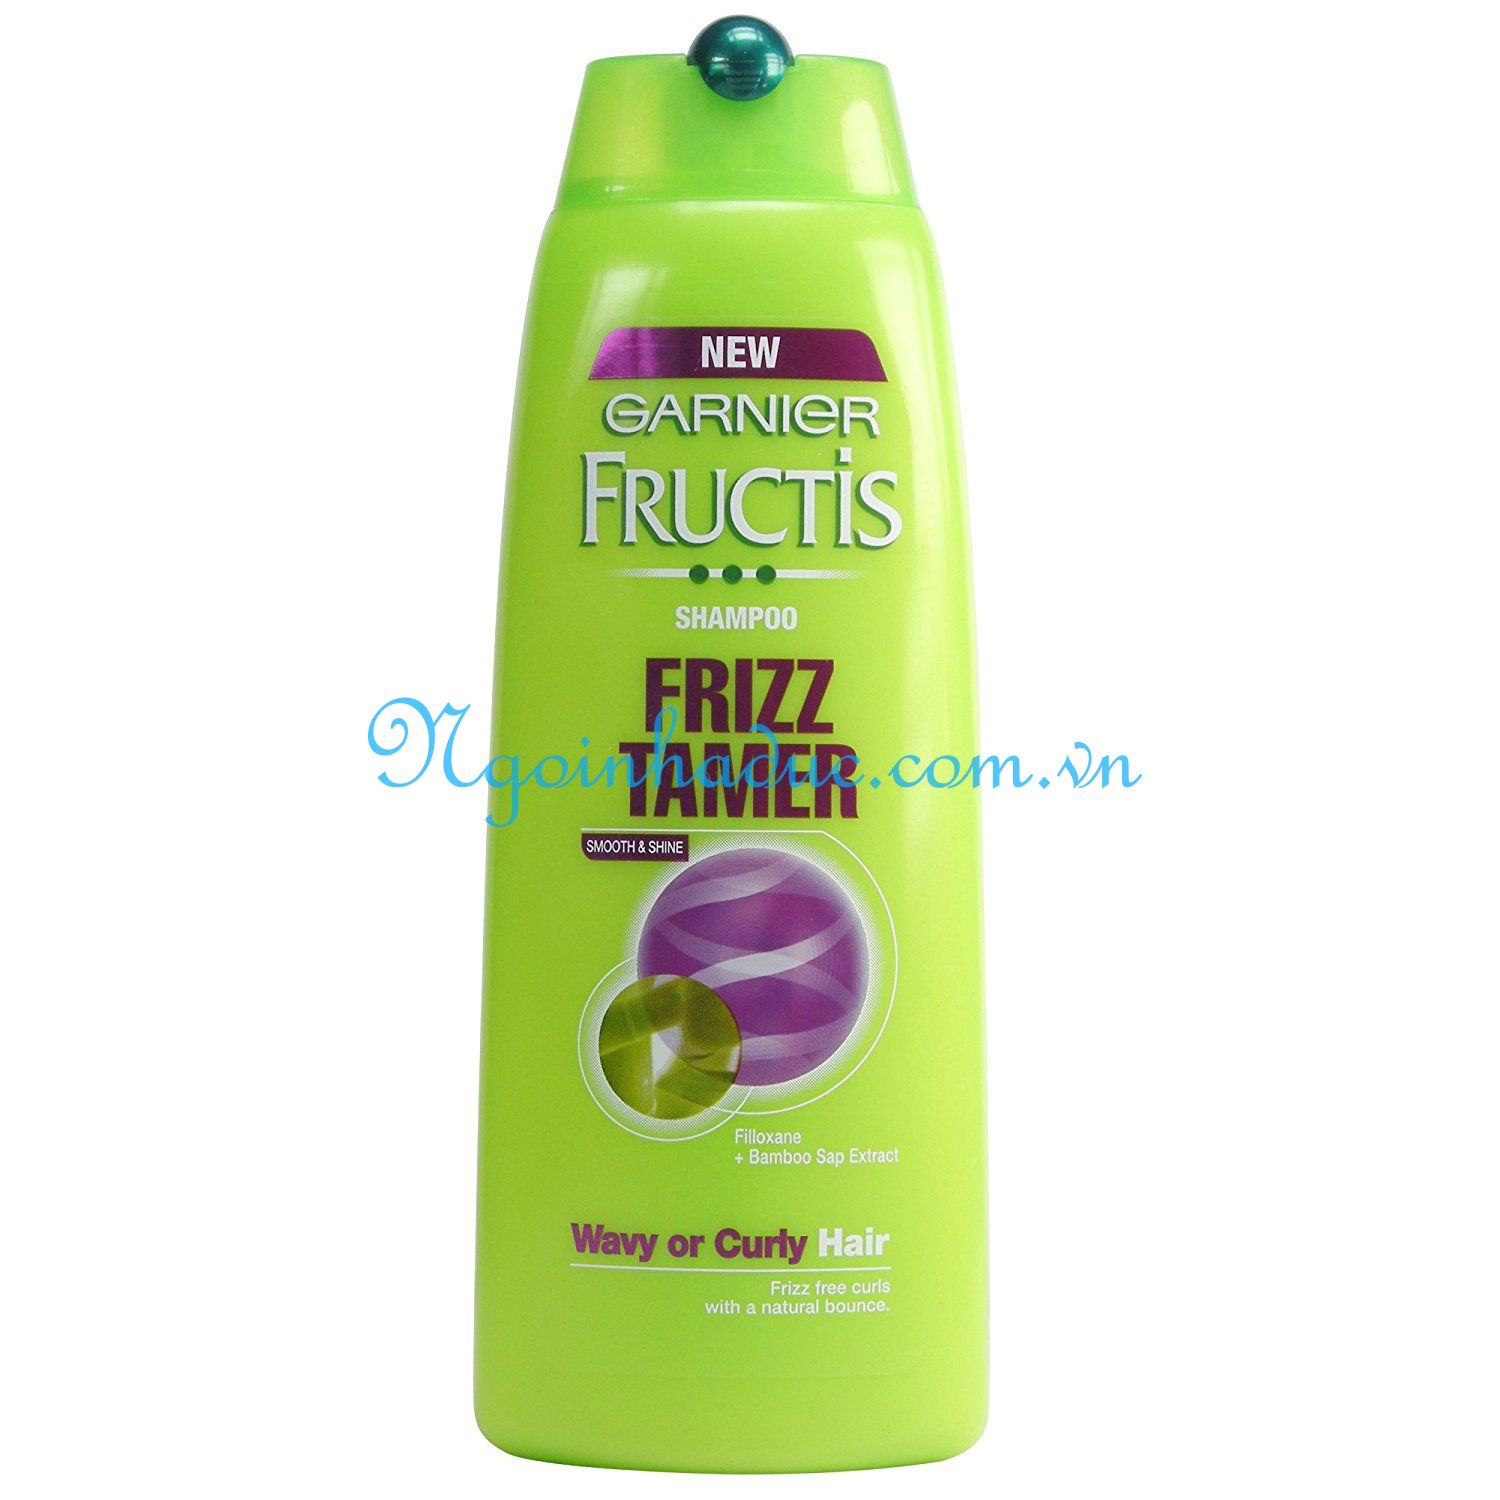 Dầu gội Fructis Frizz Tamer (xanh cây) 250ml (Giữ nếp và phục hồi tóc uốn)